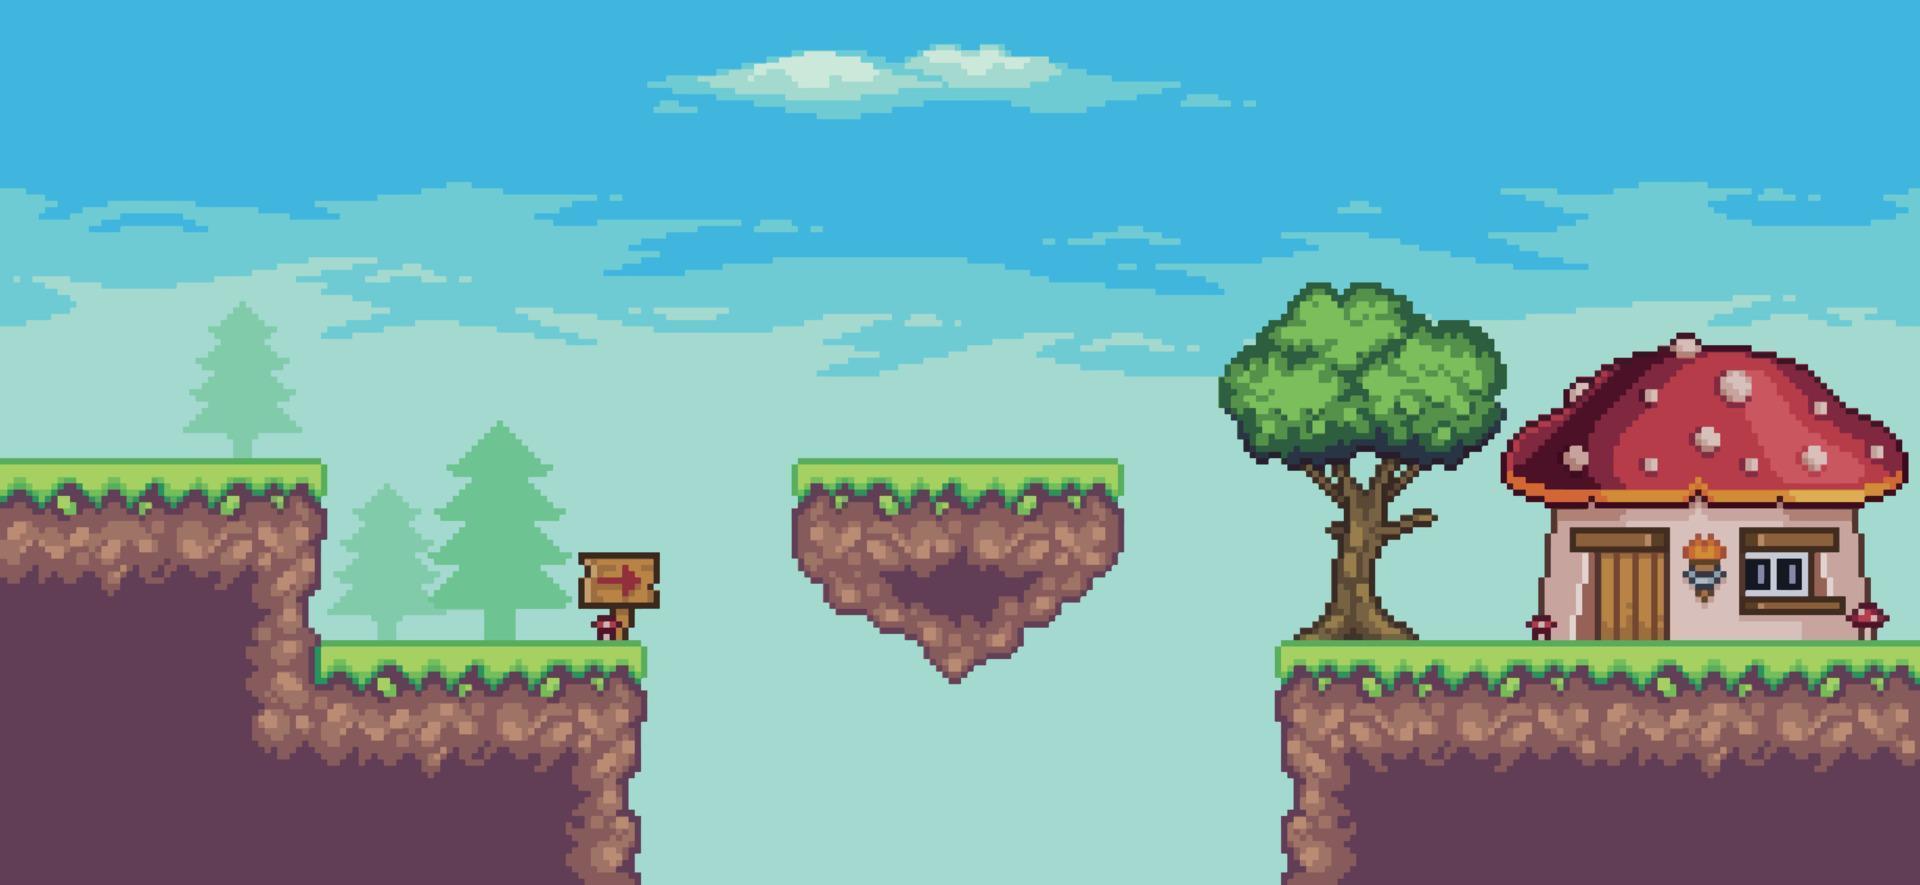 pixel art arcade game scene met boom, drijvend eiland, huis en wolken 8 bit vector achtergrond